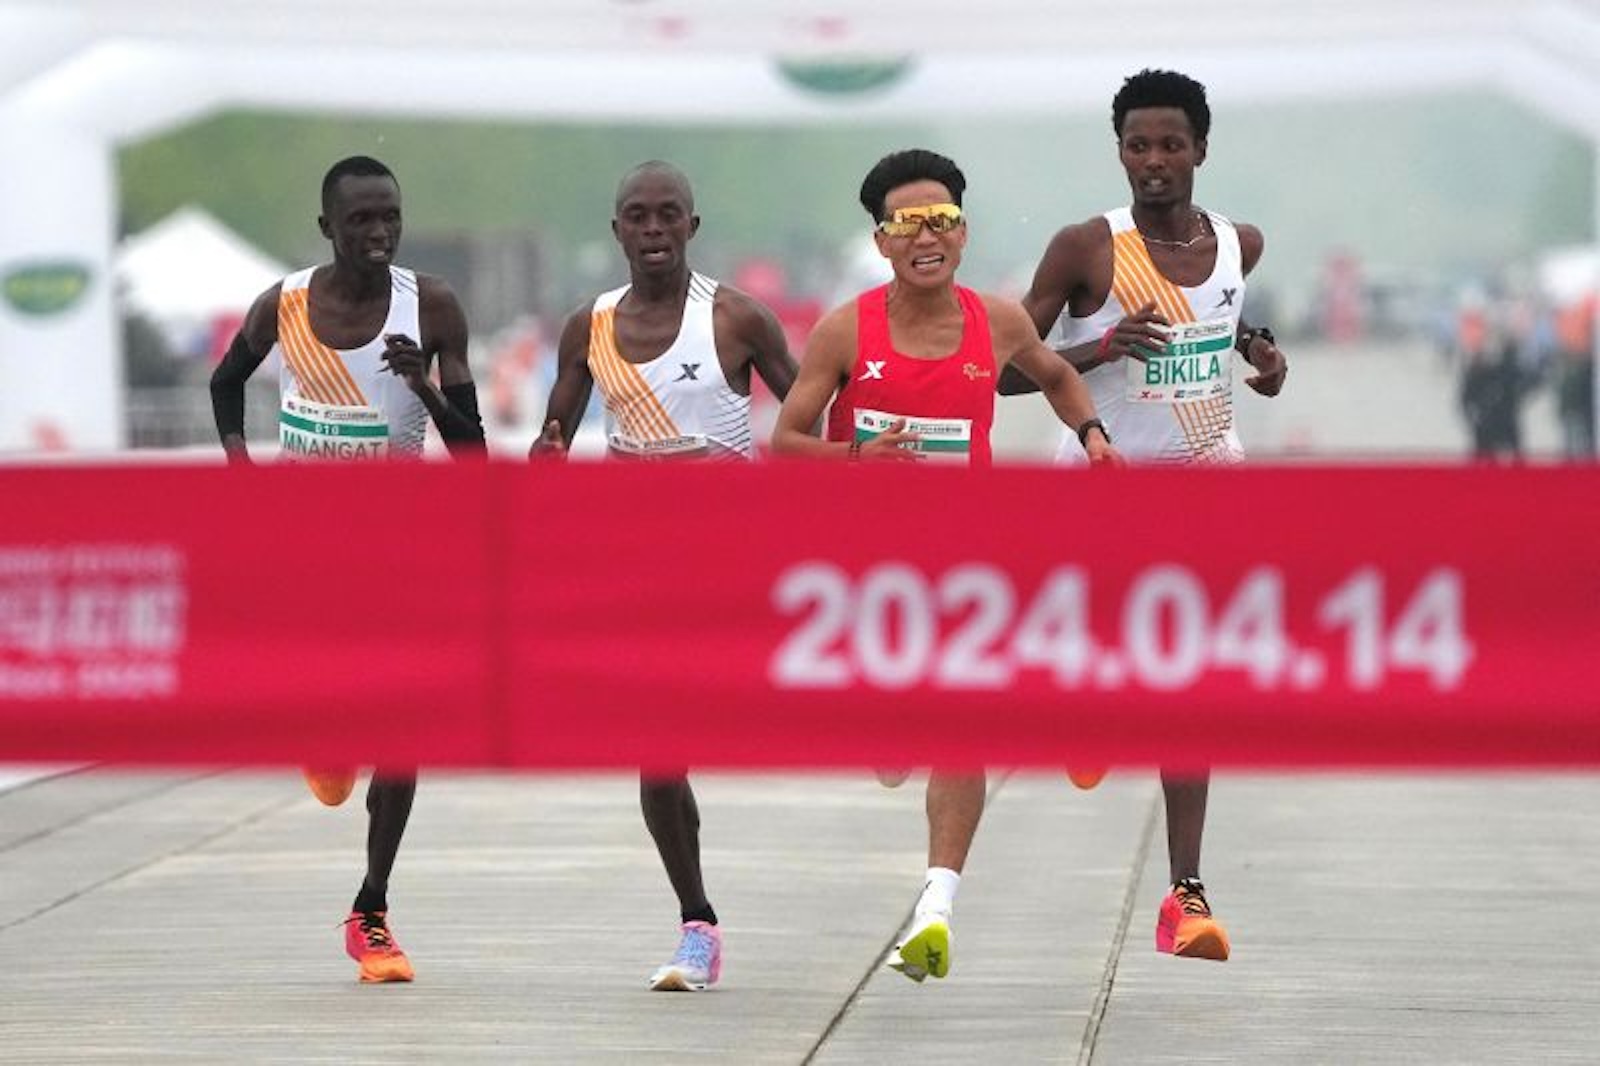 La victoria de un corredor chino en la media maratón de Beijing deja la sospecha de que sus rivales parecieran dejarlo ganar